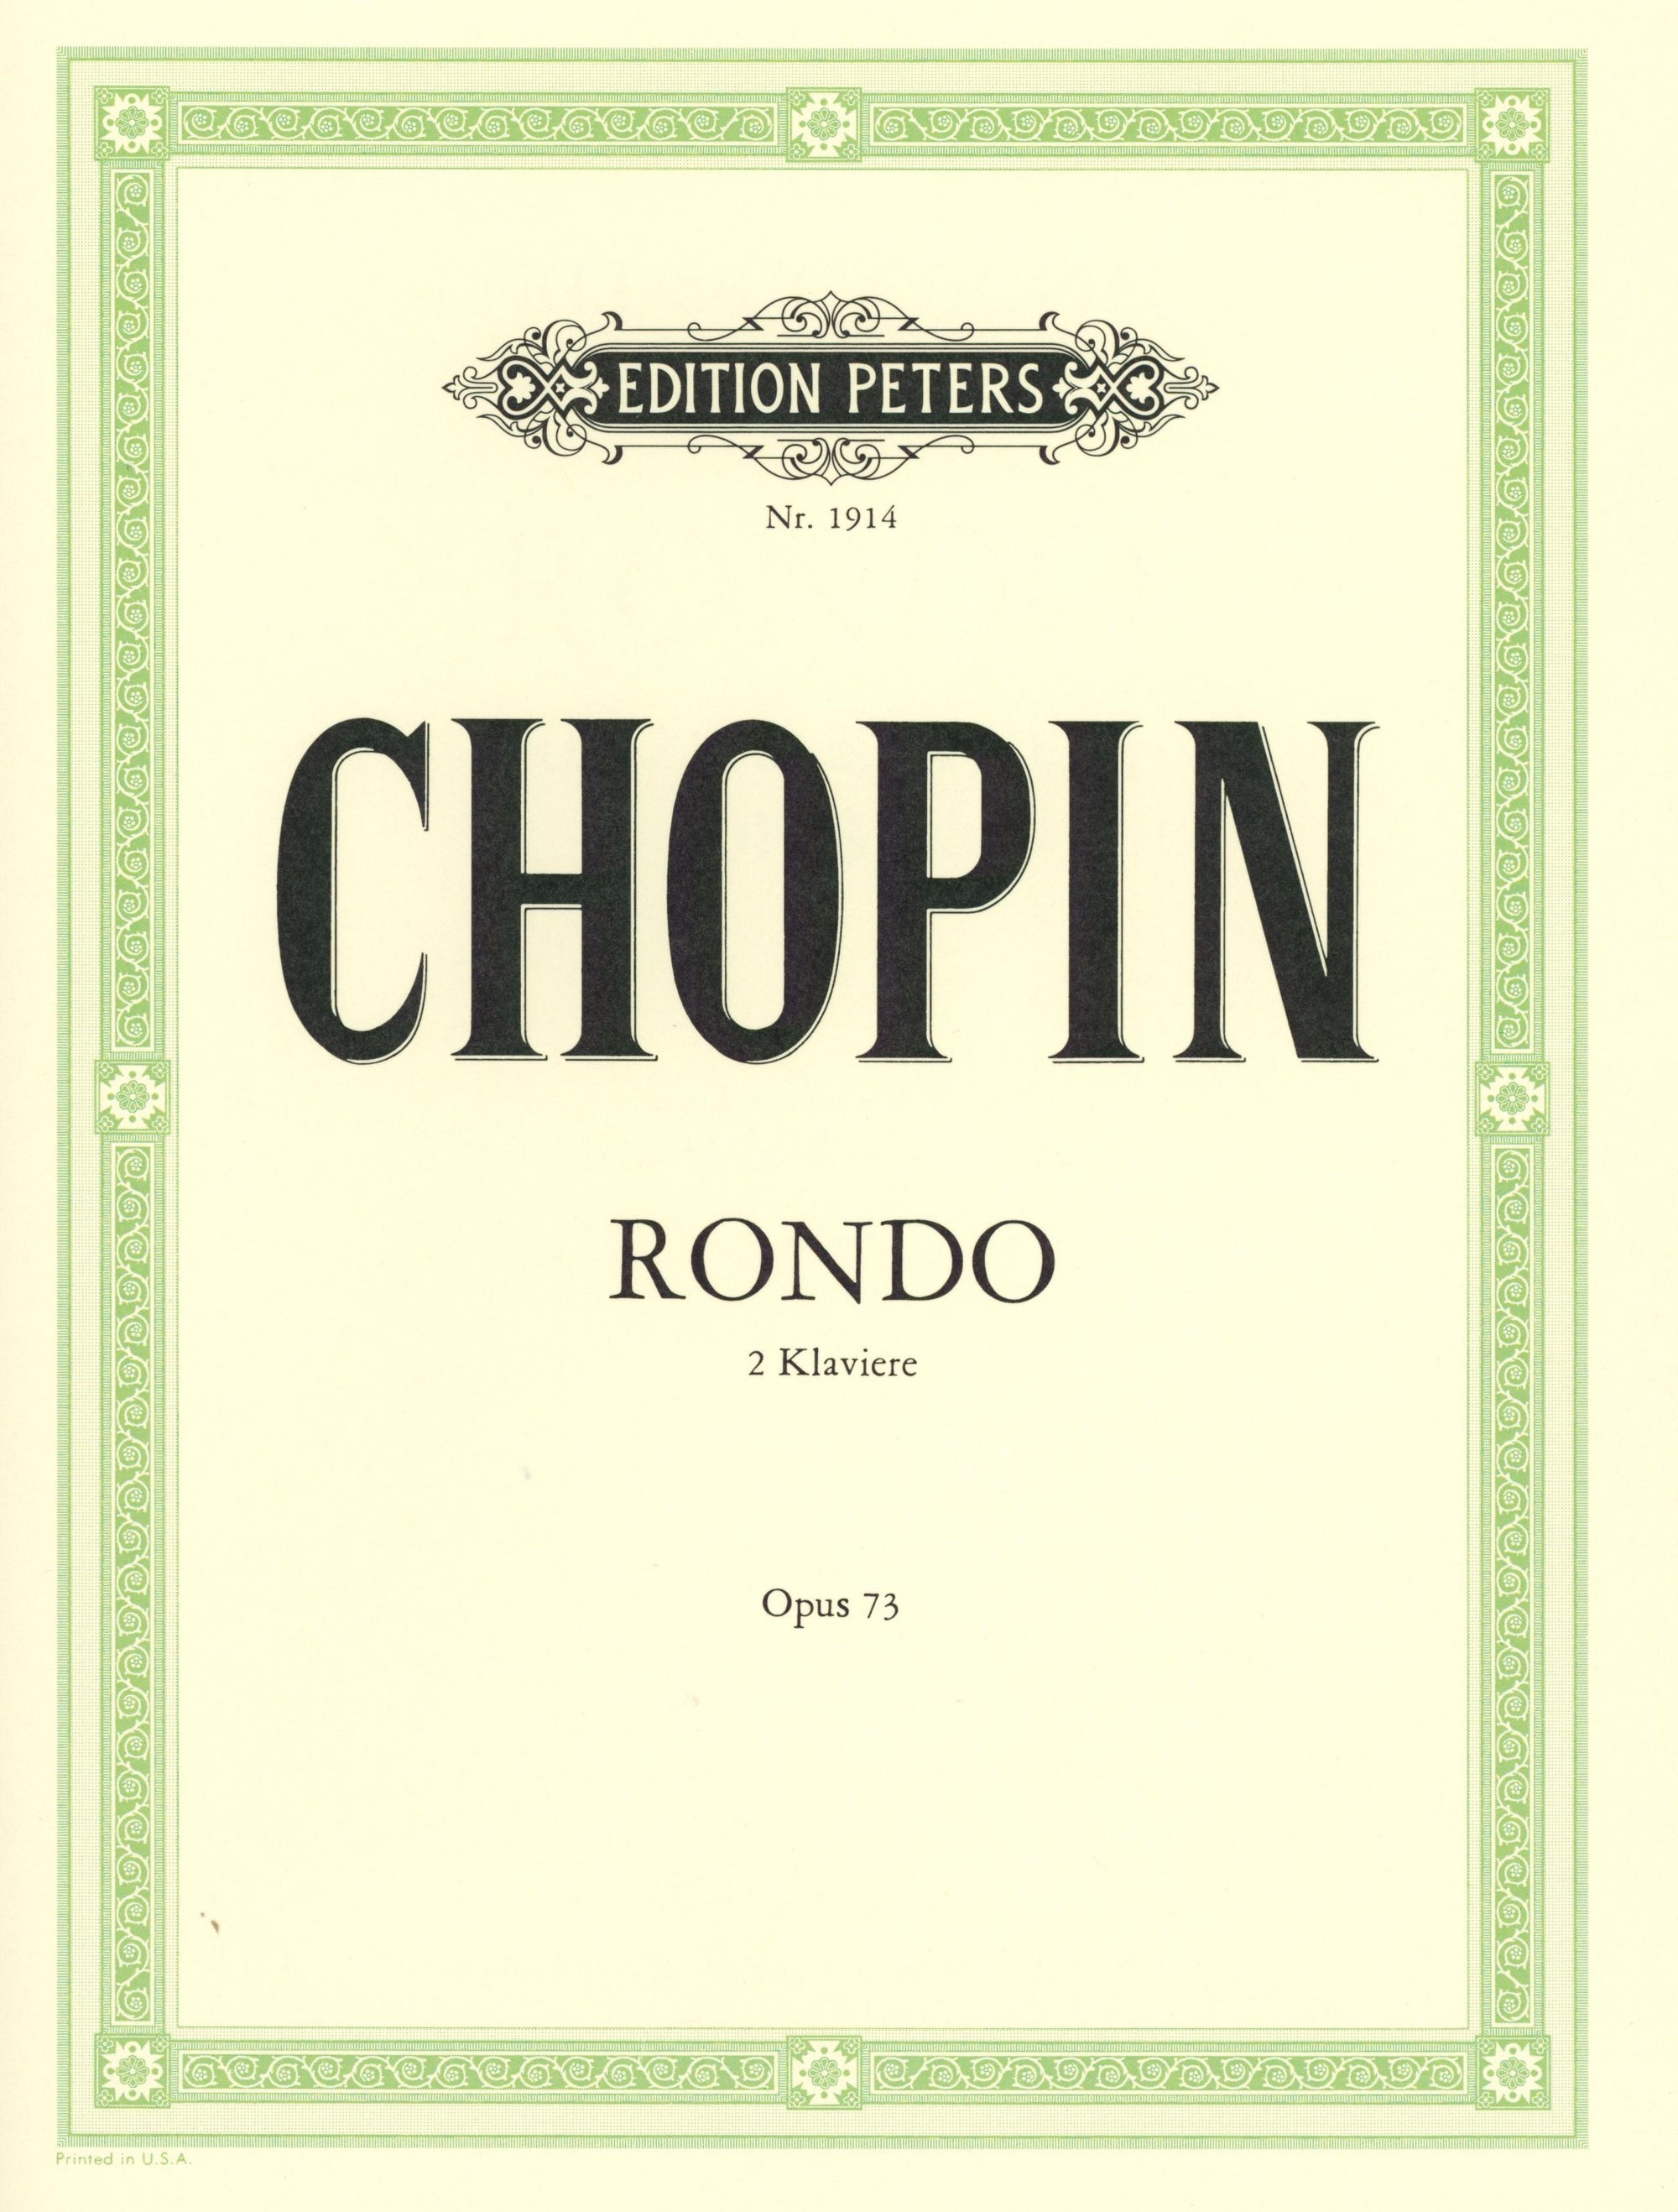 Chopin: Rondo in C Major, Op. posth. 73